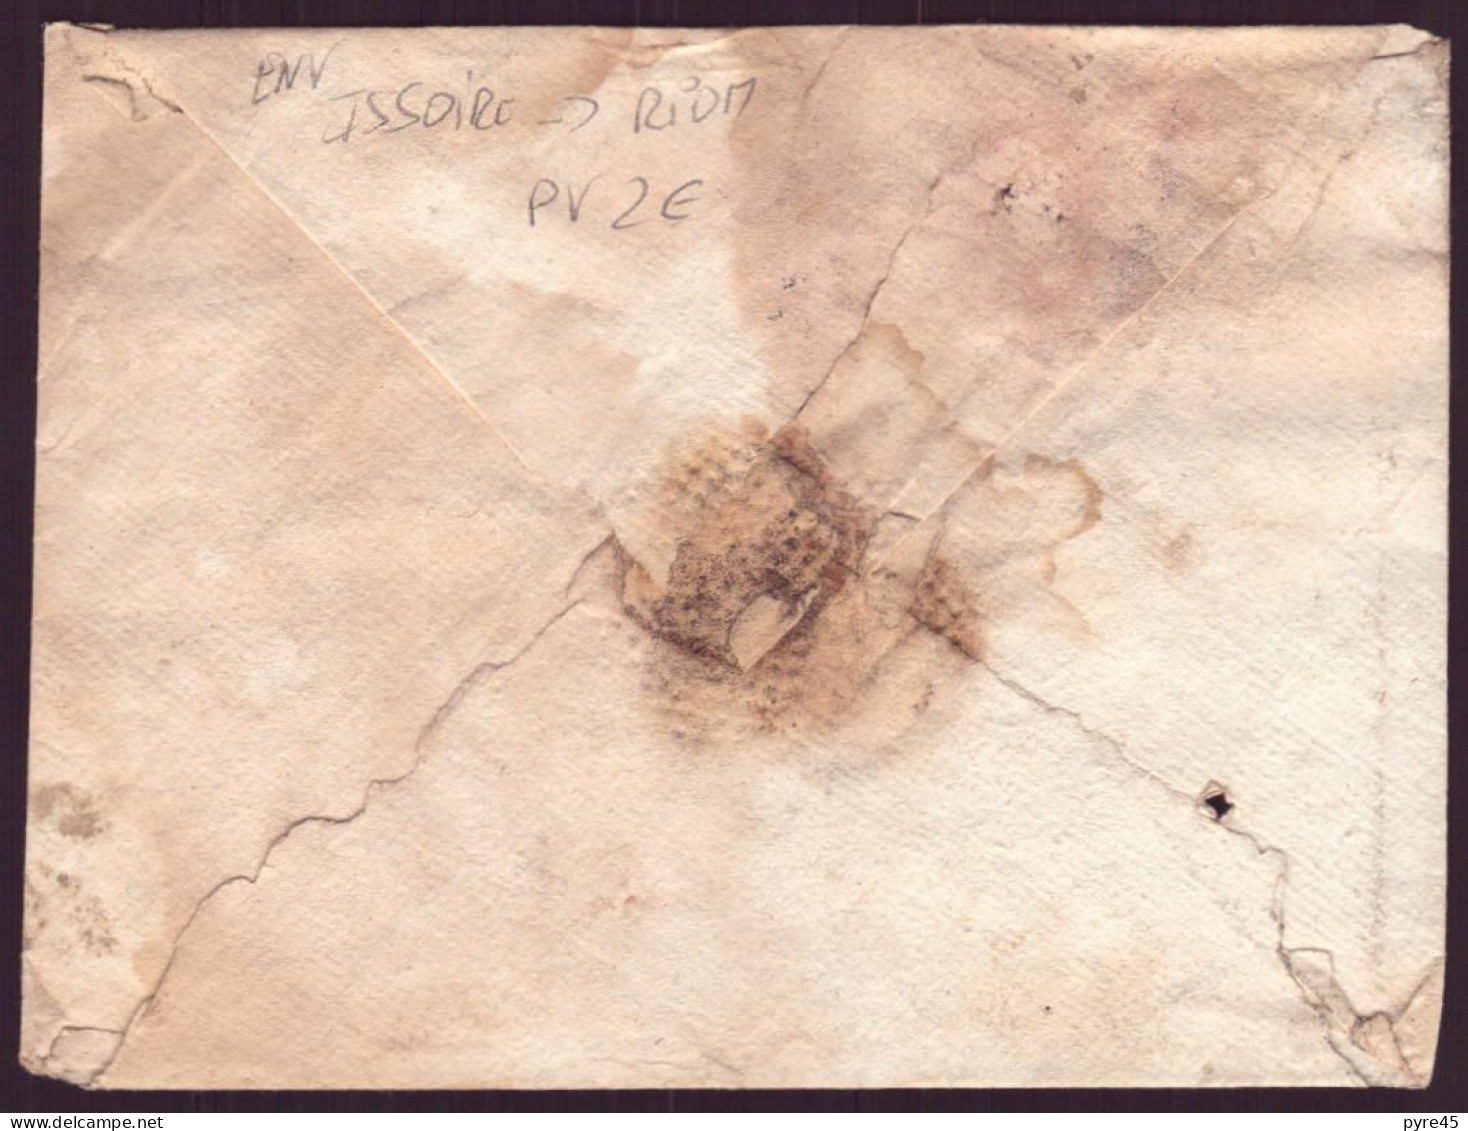 Enveloppe Manuscrite De Issoire Pour Riom - Manuscripts